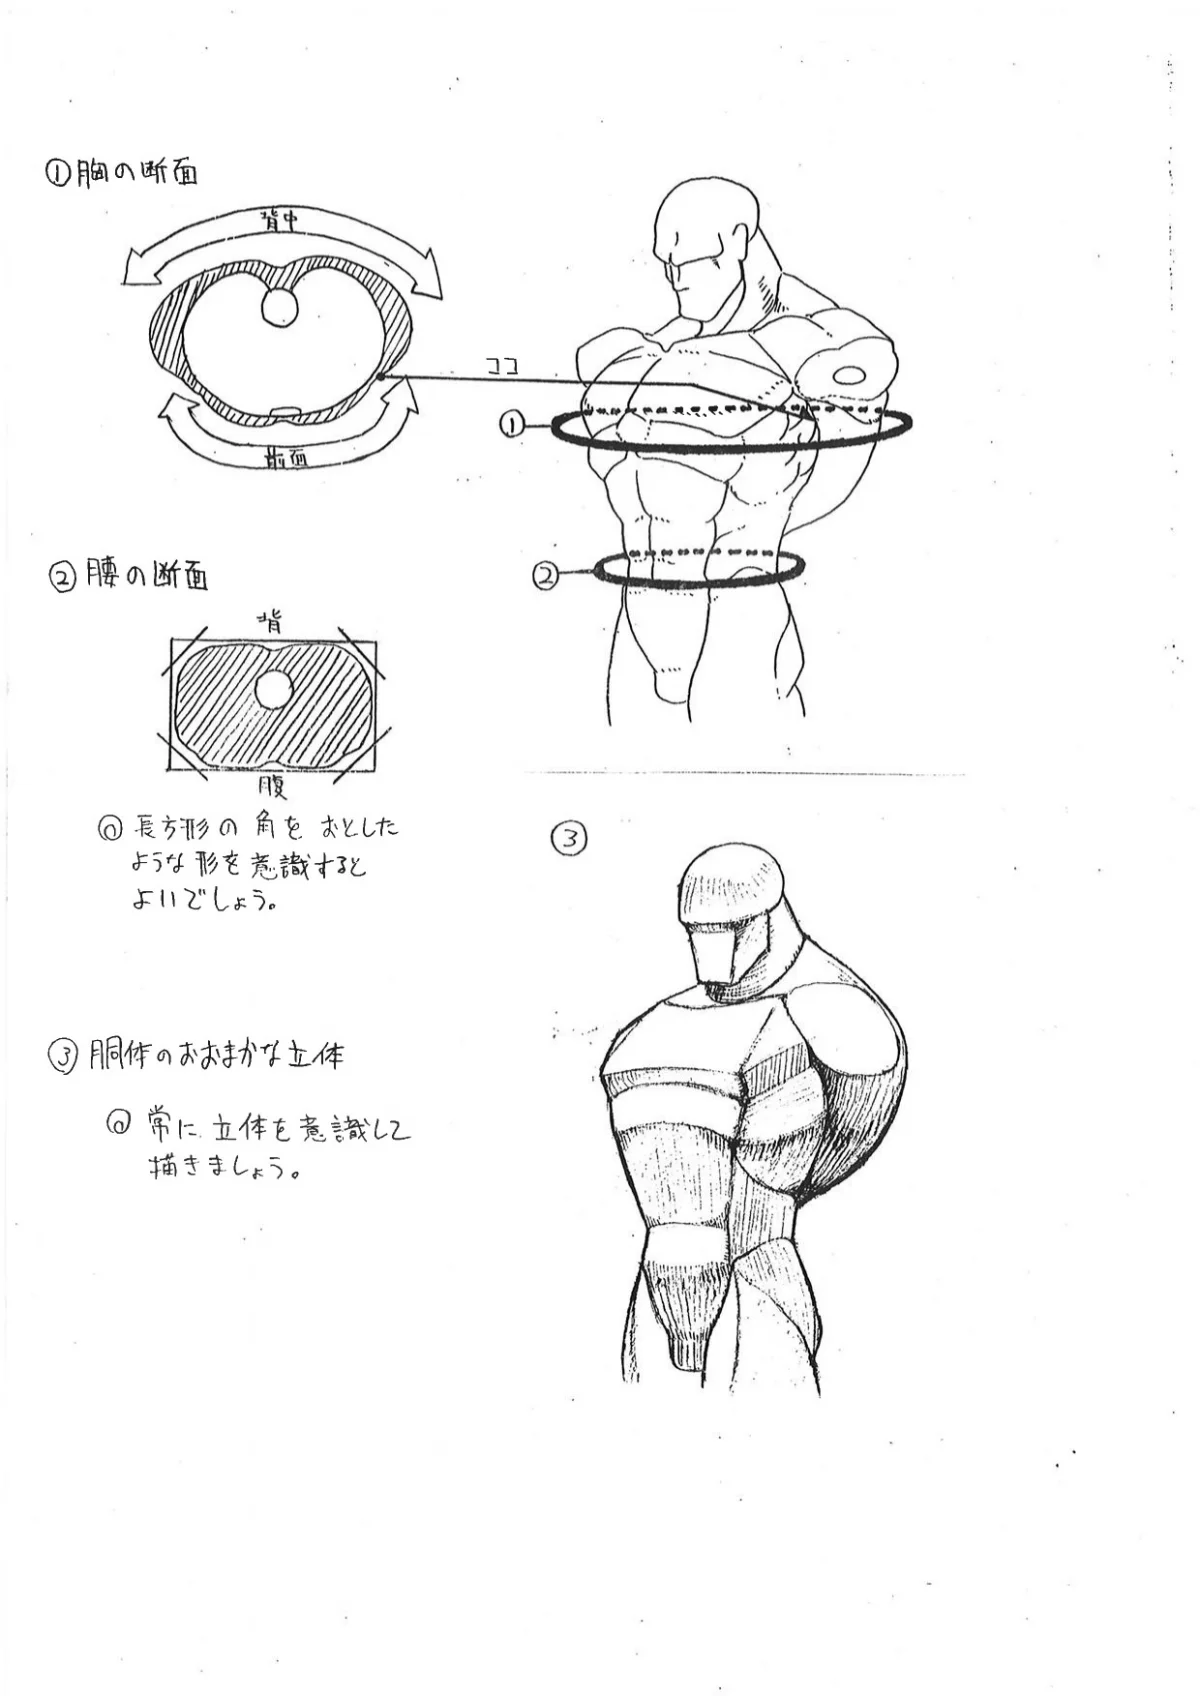 Capcom показала «шпаргалки» по анатомии для дизайнеров Street Fighter - фото 4